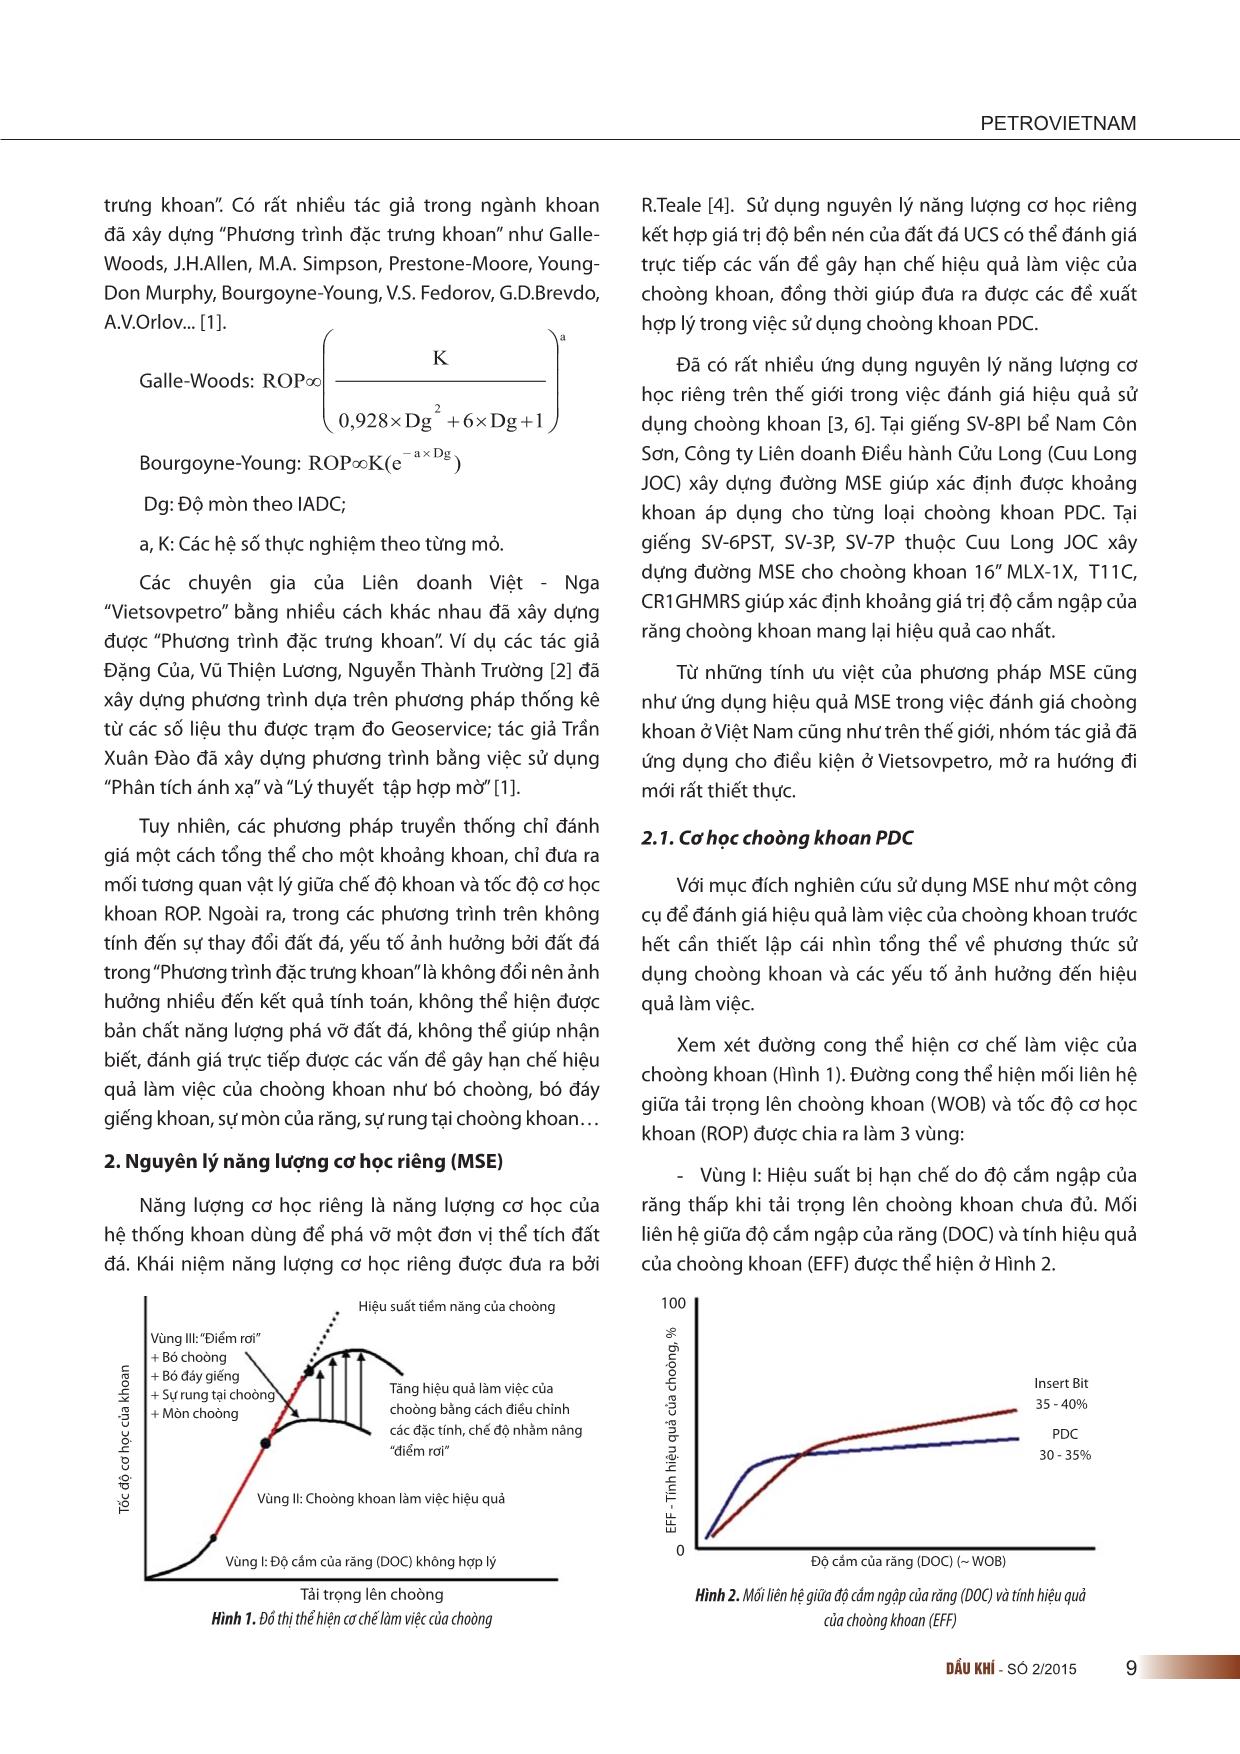 Phương pháp tiếp cận mới trong đánh giá hiệu suất làm việc của choòng khoan bằng “Nguyên lý năng lượng cơ học riêng” trang 2